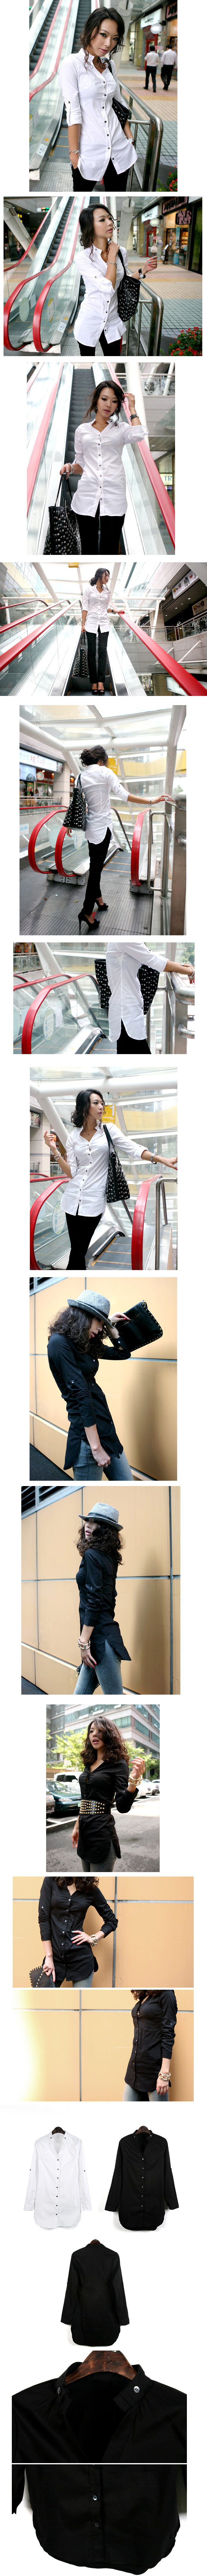 เสื้อเชิ้ตทำงานแฟชั่น : เสื้อเชิ้ตทำงานผู้หญิงแขนยาว แฟชั่นเกาหลี นำเข้า สวย สีขาว/ดำ ไซส์ S/M/L/XL : LotusNoss - พรีออเดอร์MI506